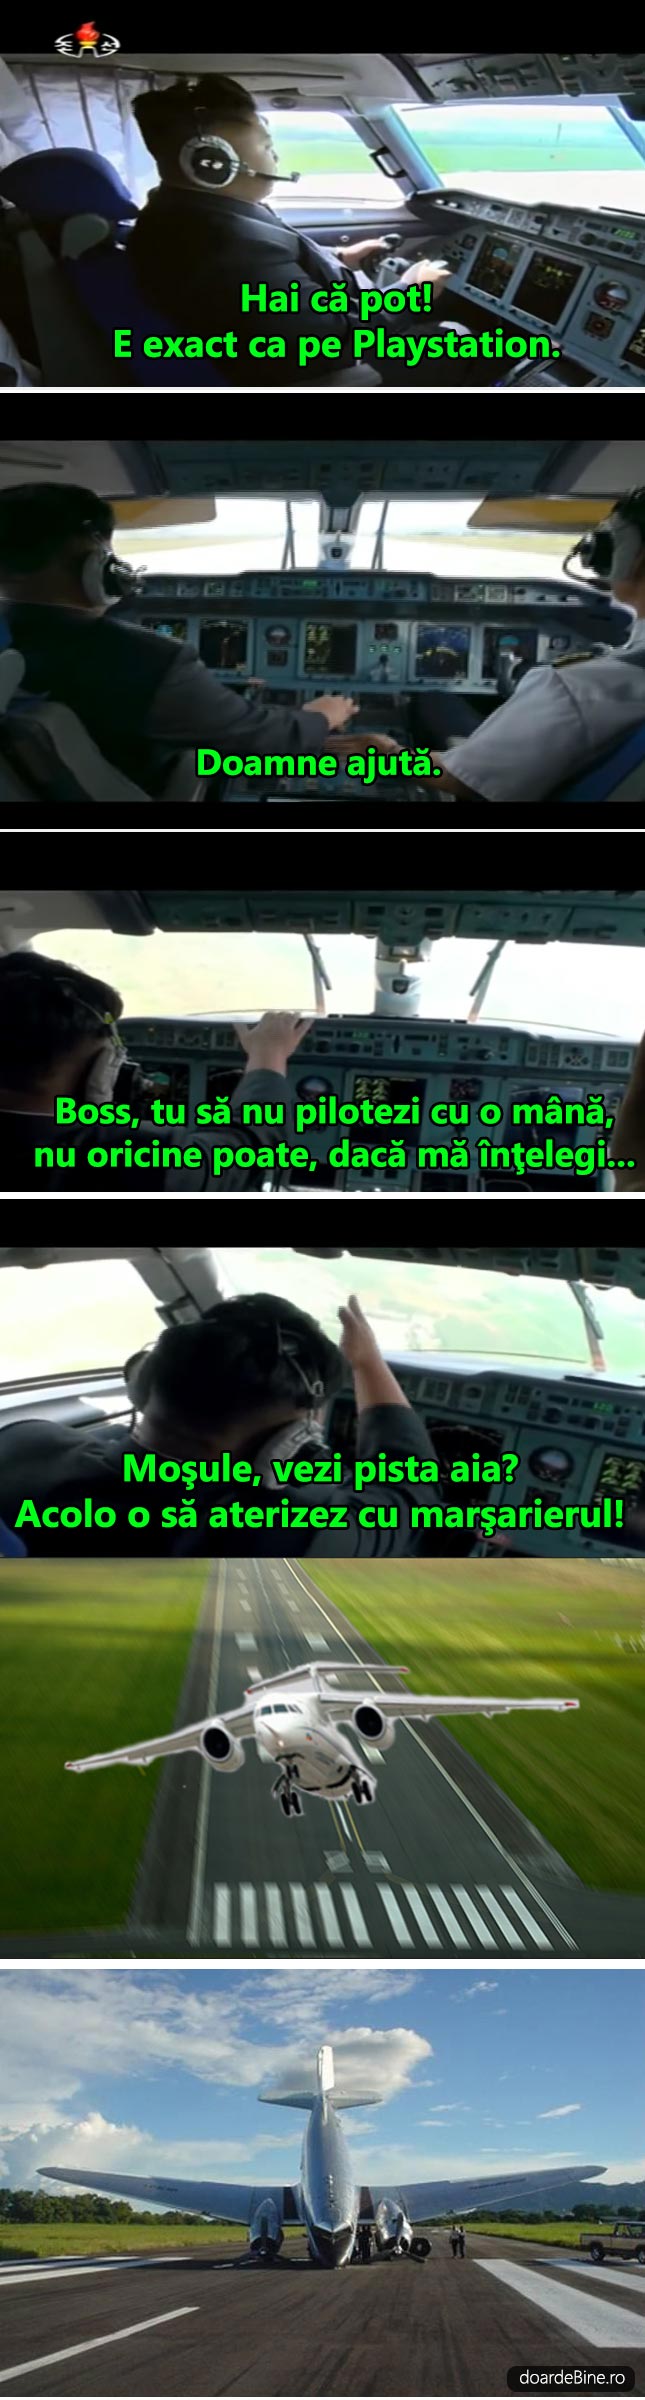 Kim Jong-un pilotul care aterizează cu marşarierul | poze haioase